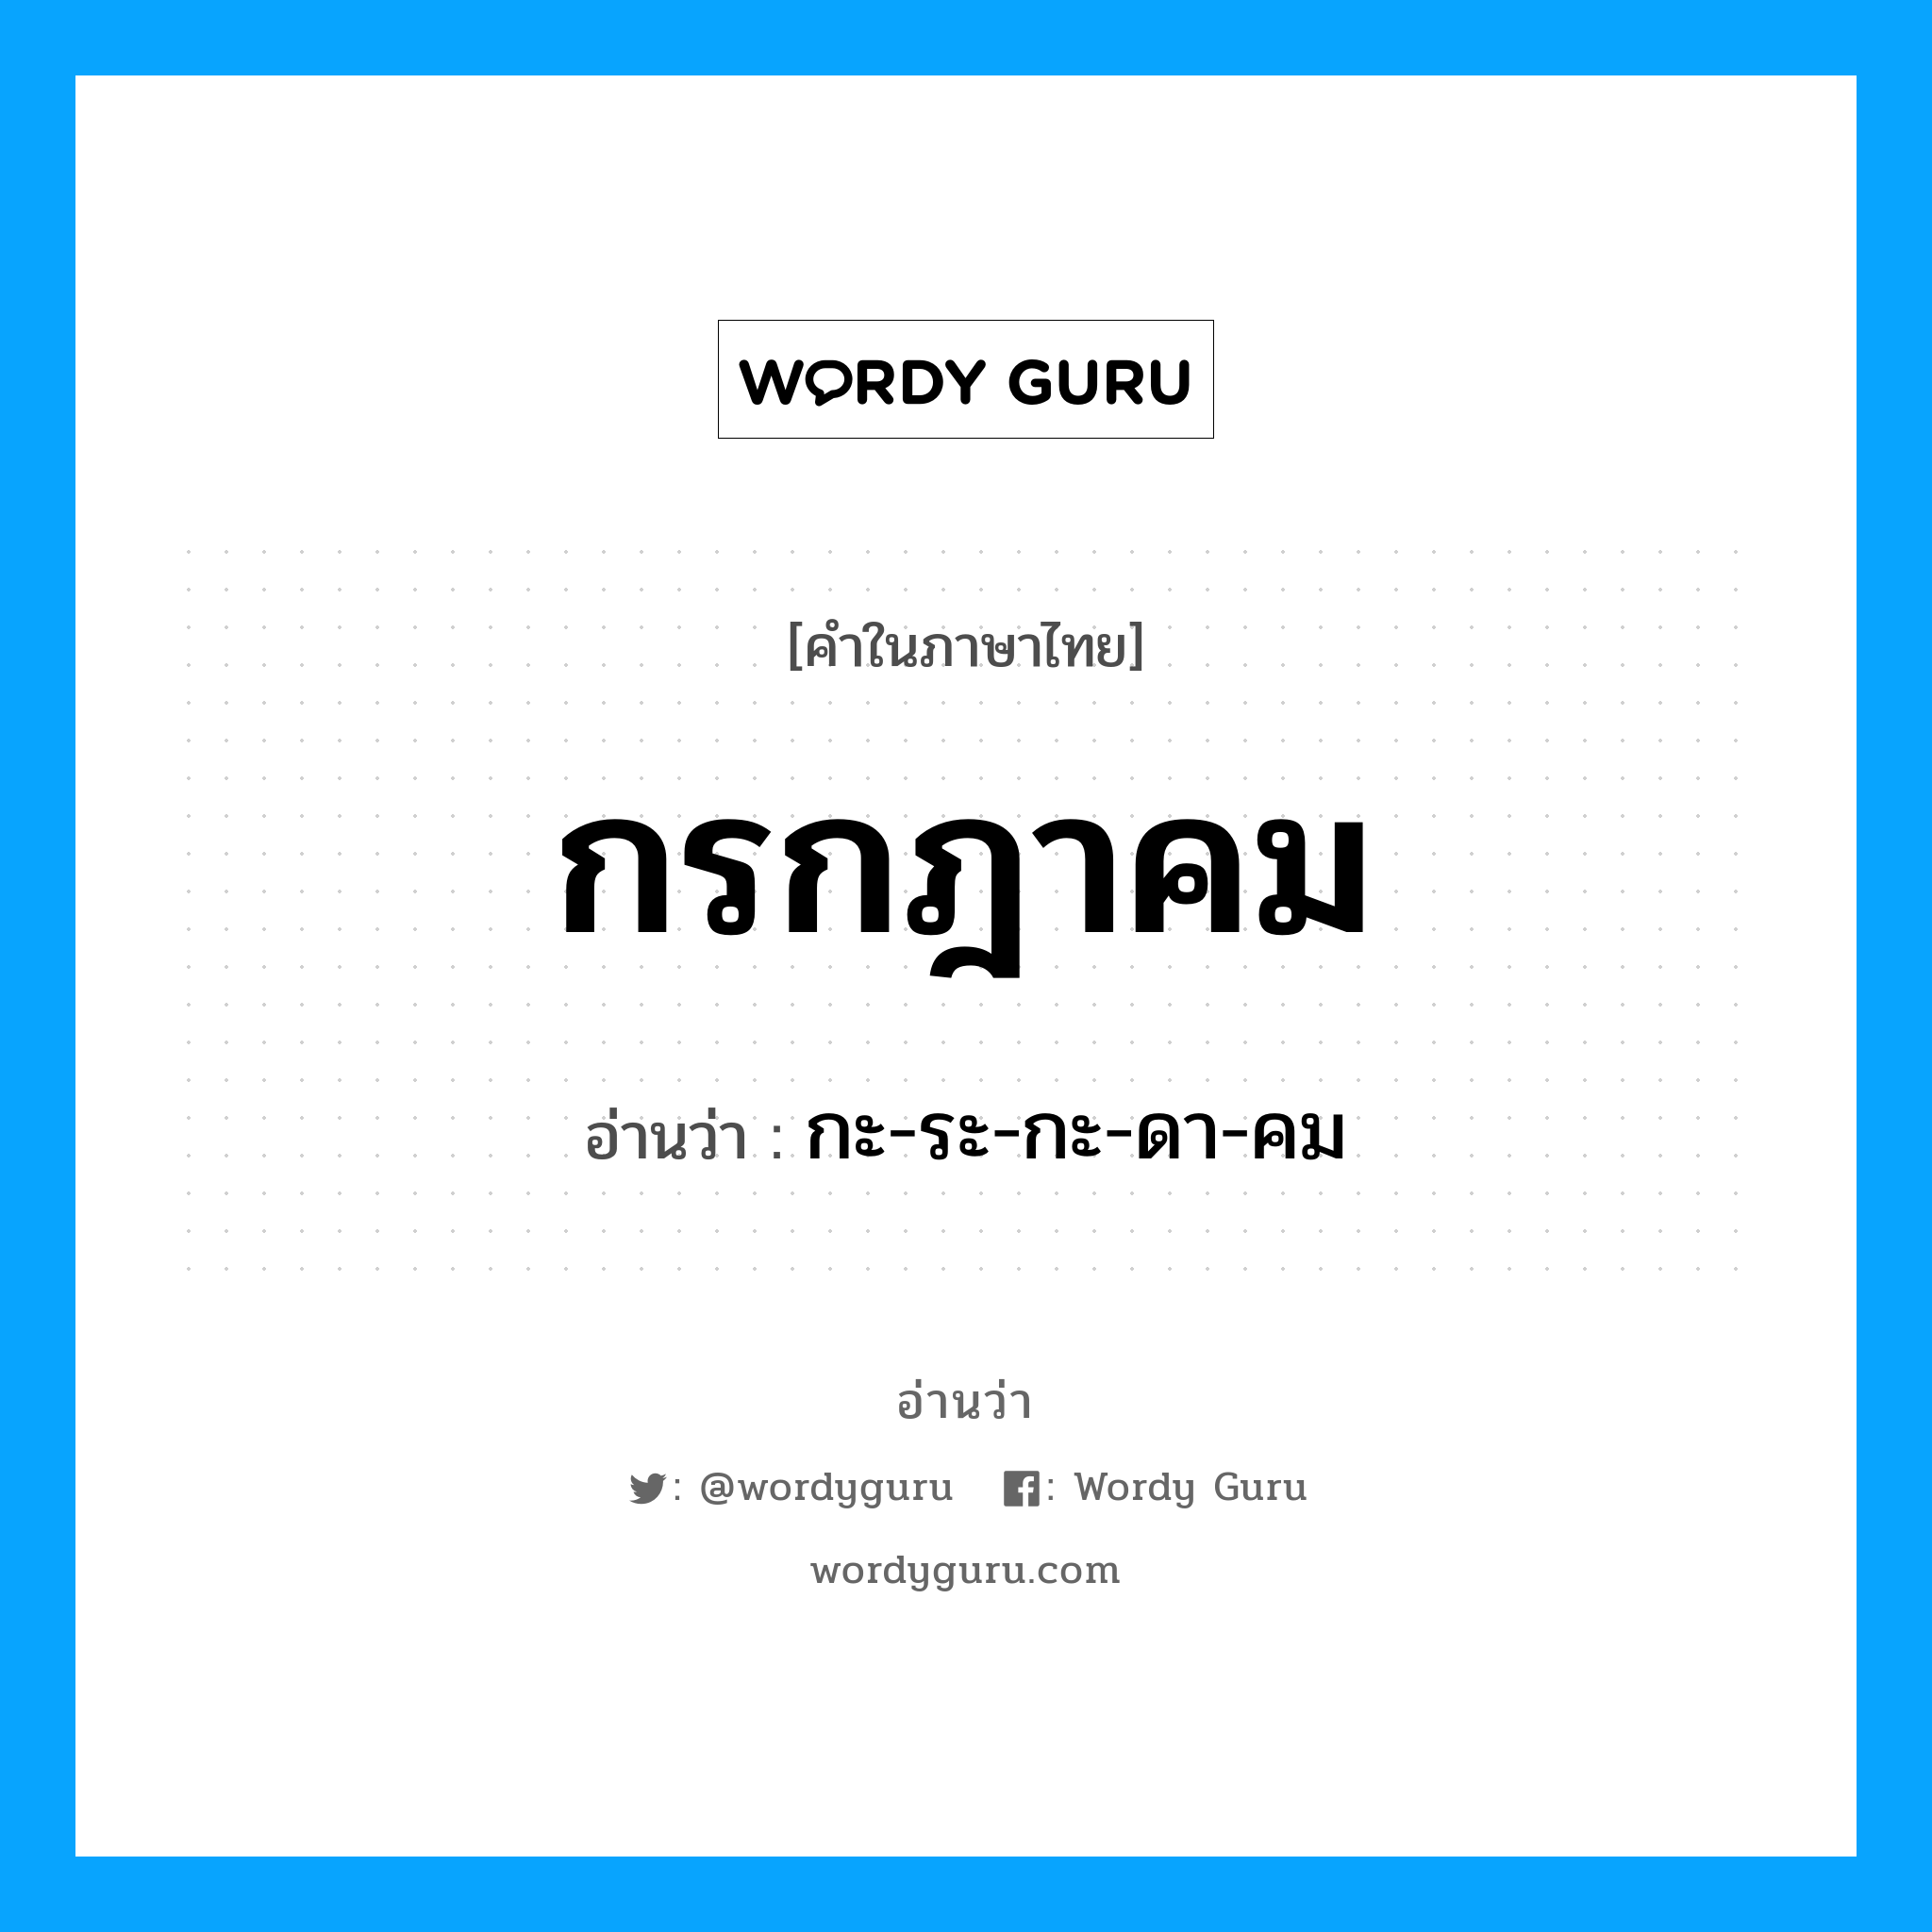 "กะ-ระ-กะ-ดา-คม" อยู่ในกลุ่ม เดือน, คำในภาษาไทย กะ-ระ-กะ-ดา-คม อ่านว่า กรกฎาคม หมวด เดือน หมวด เดือน